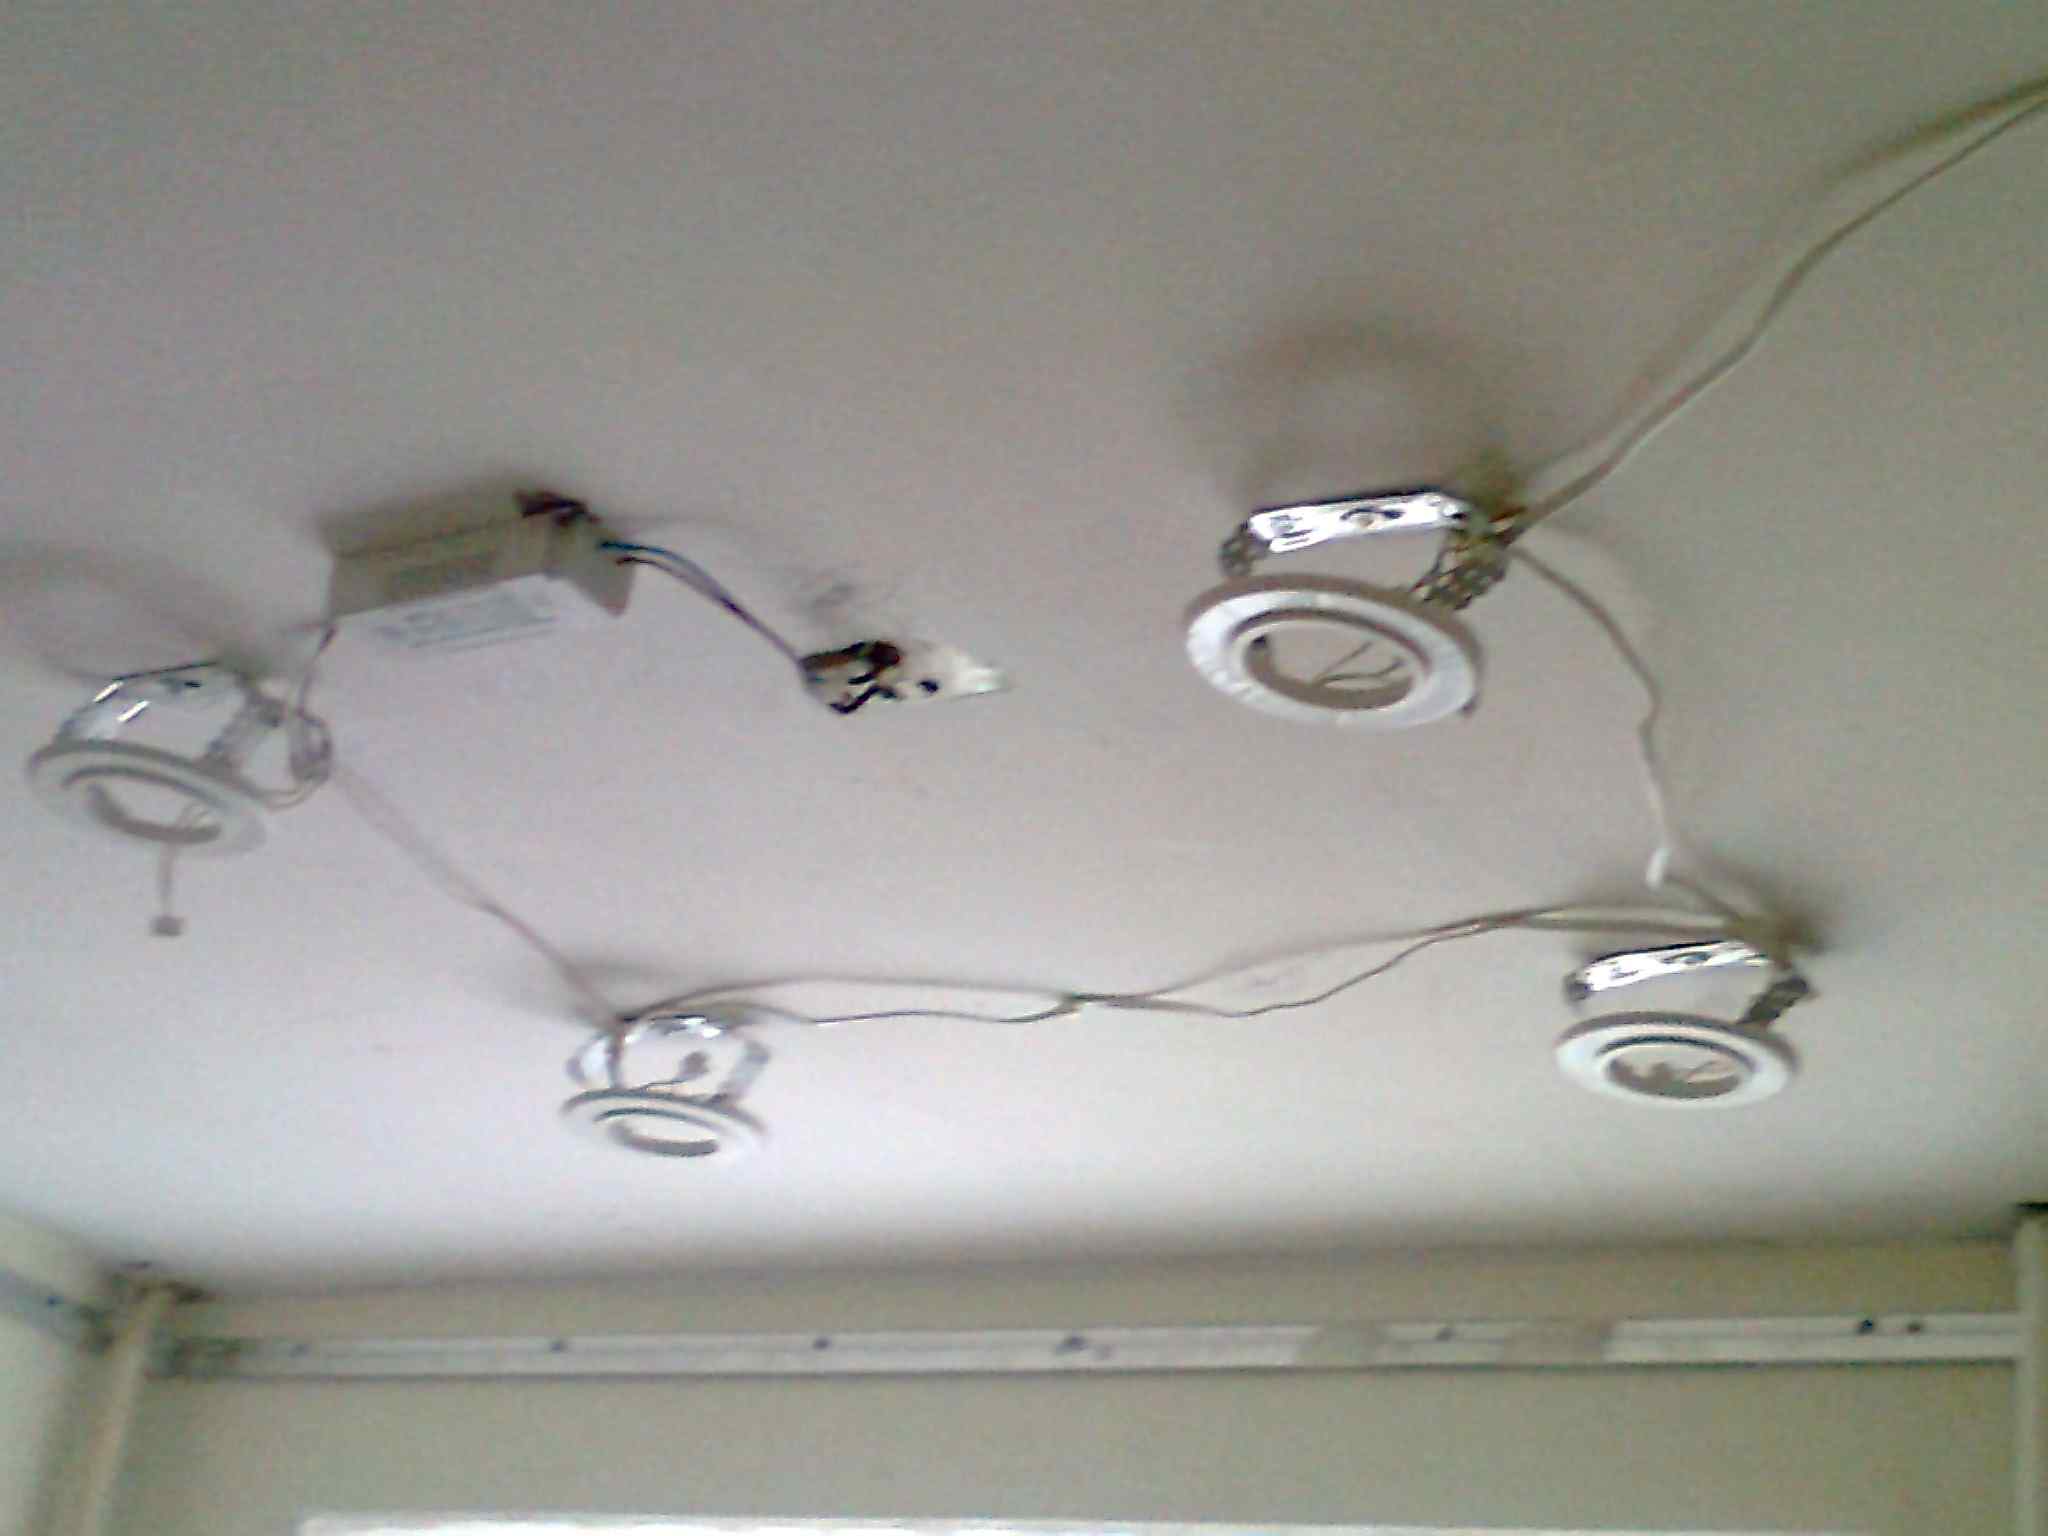 Точечные светильники для пластикового потолка